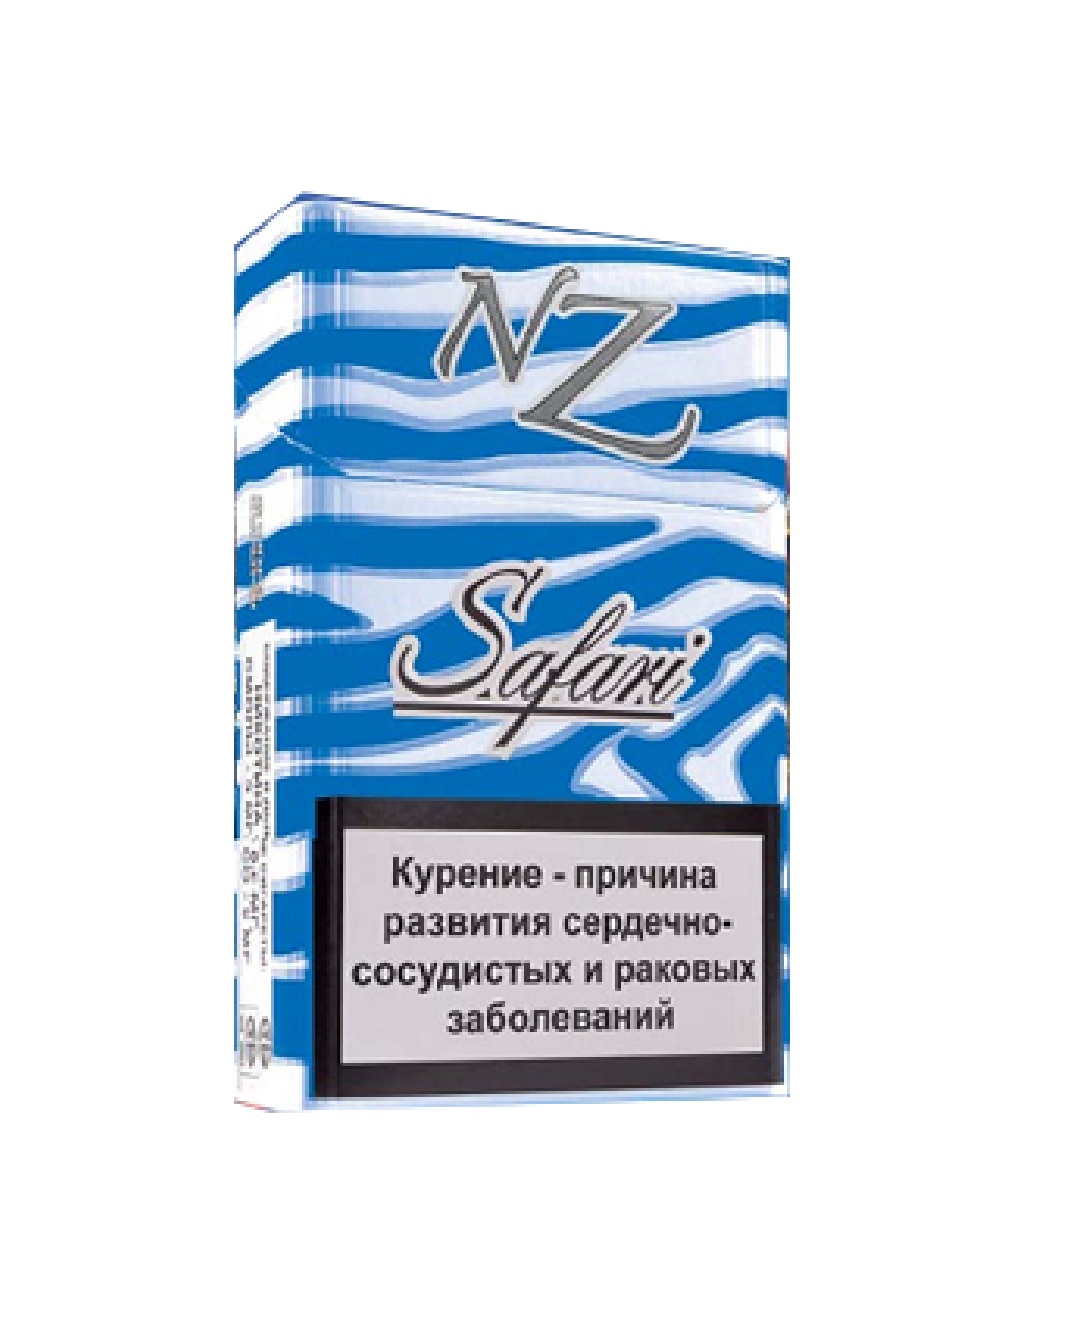 Купить белорусские сигареты розницу. НЗ сигареты Белоруссия 10. Белорусские сигареты nz Safari. Сигареты nz Safari компакт. Белорусские сигареты НЗ сафари.